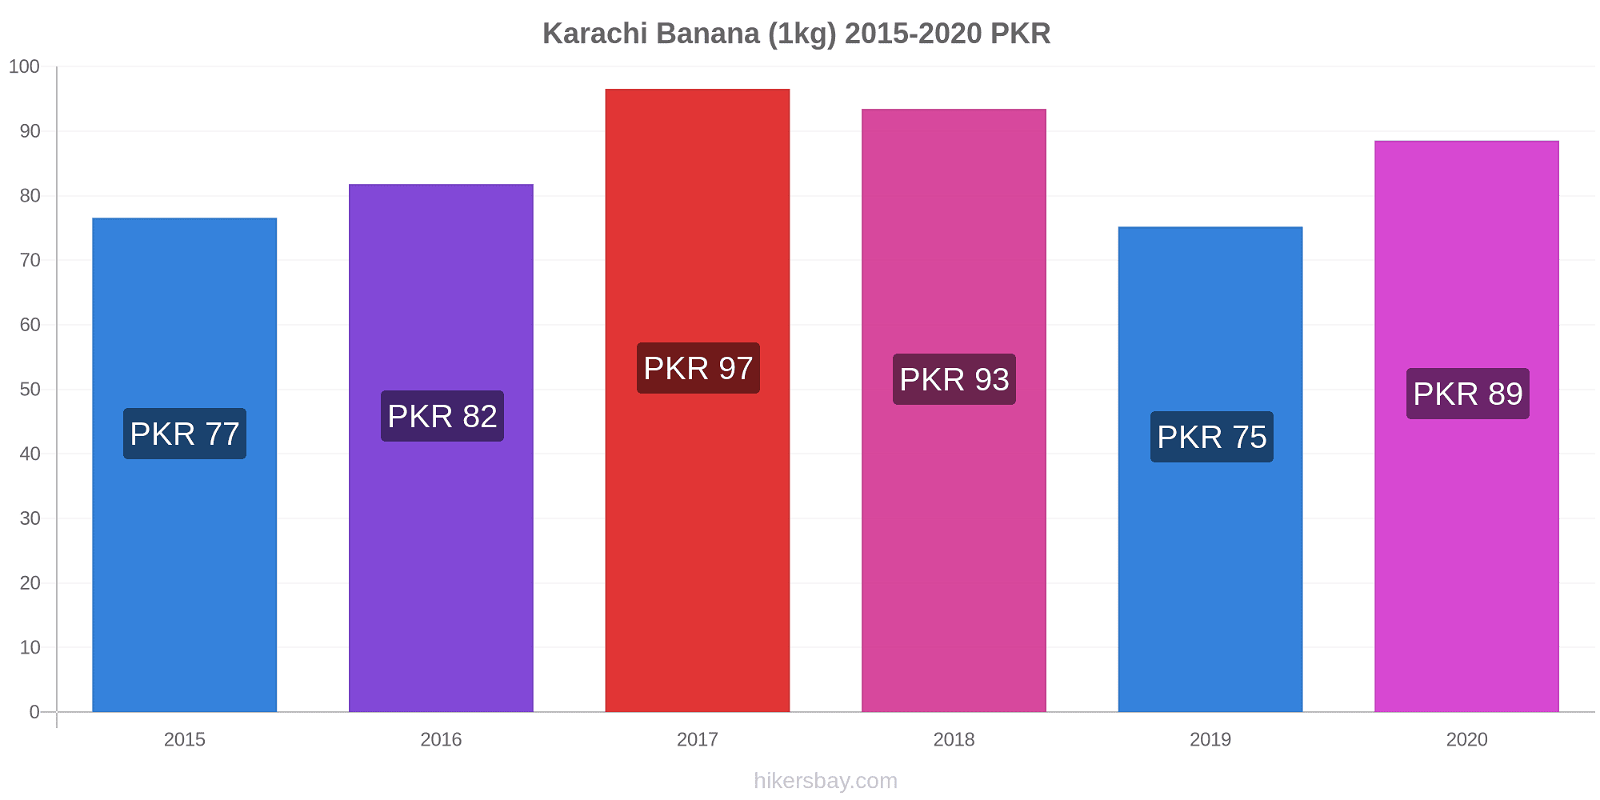 Karachi modificări de preț Banana (1kg) hikersbay.com